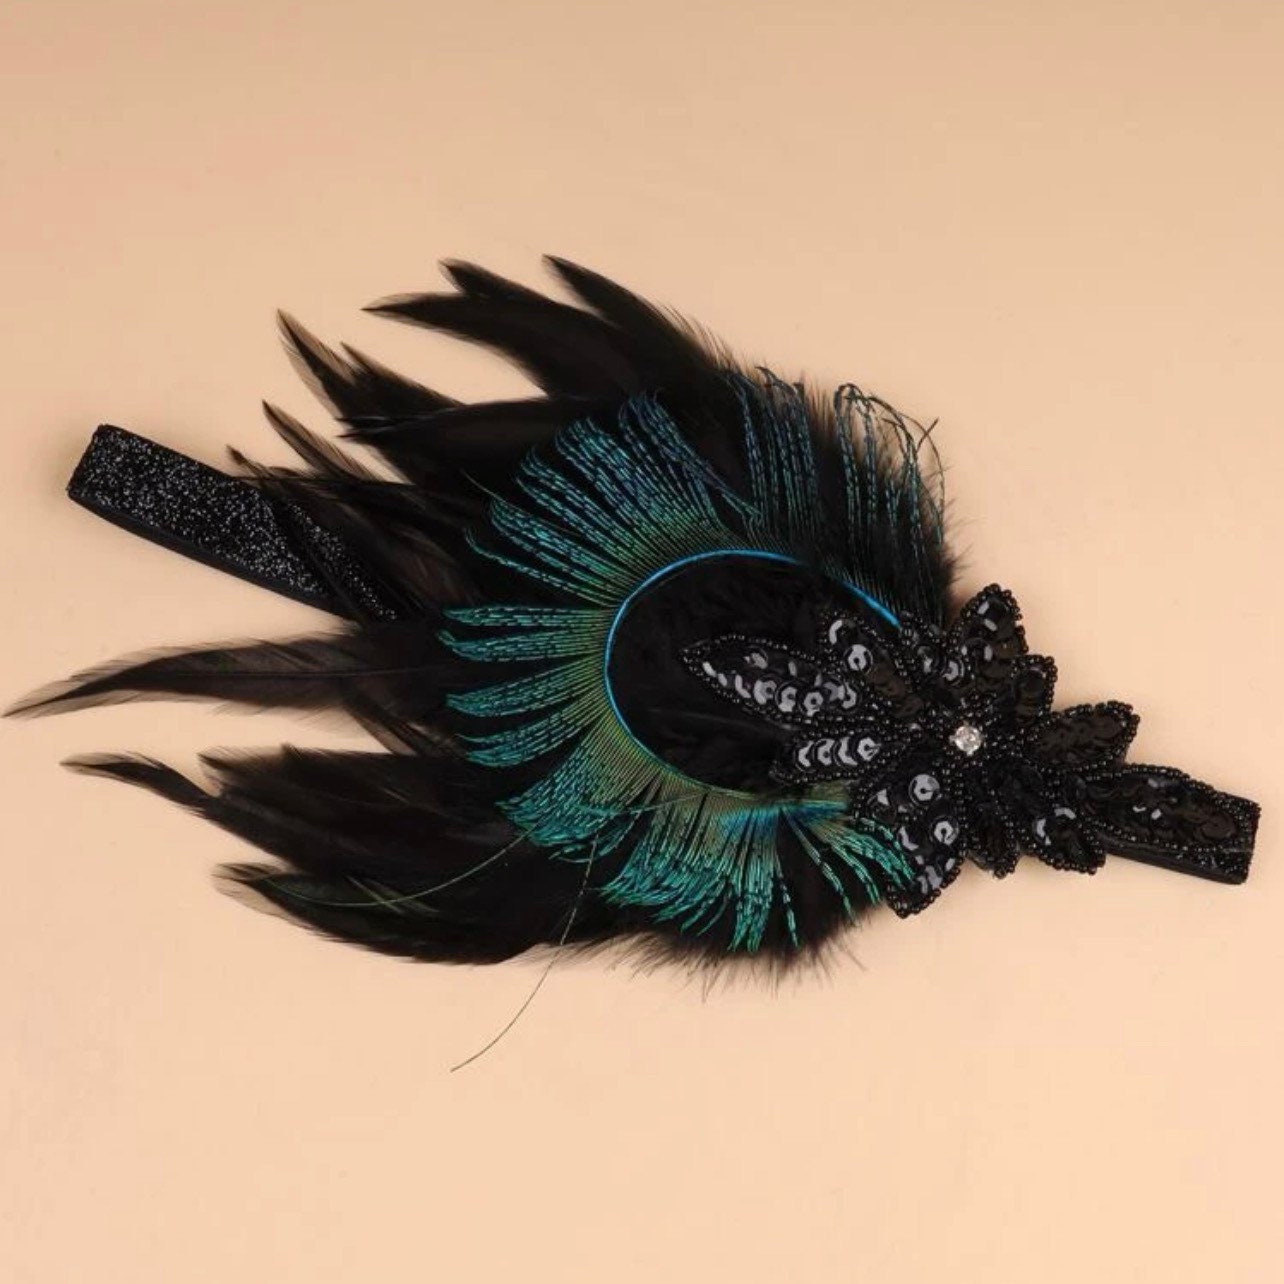 Peacock Feather and Sequin Headband - Halloween Headpiece, Halloween Costume, Feather Headpiece, Flapper Headband